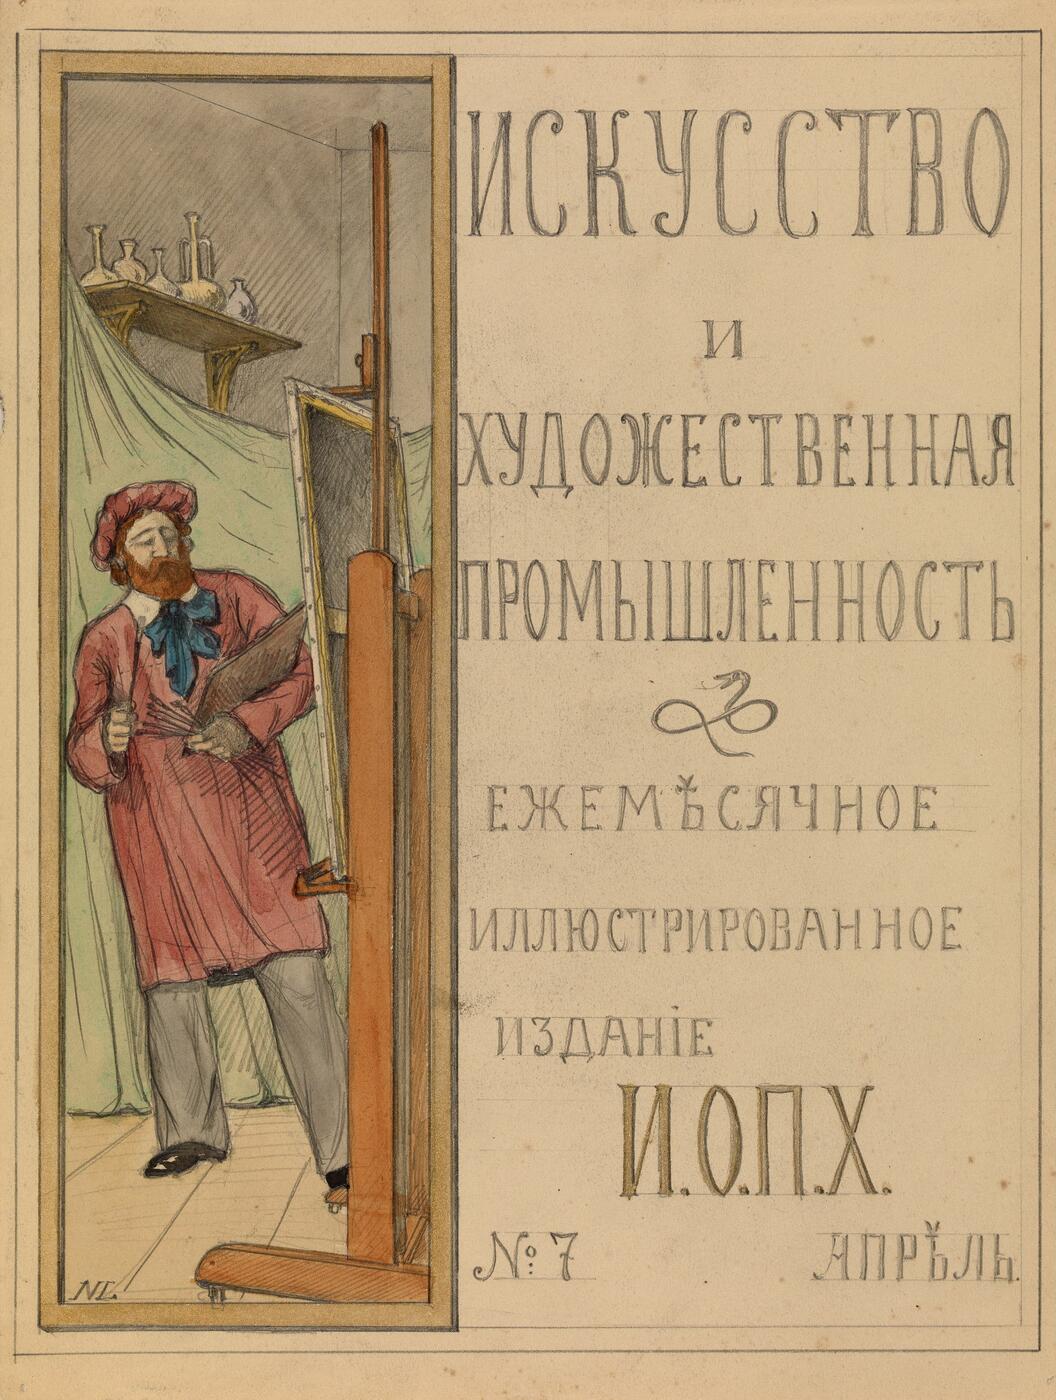 Cover Design for the Magazine "Iskusstvo I khudozhestvennaya promyshlennost'"